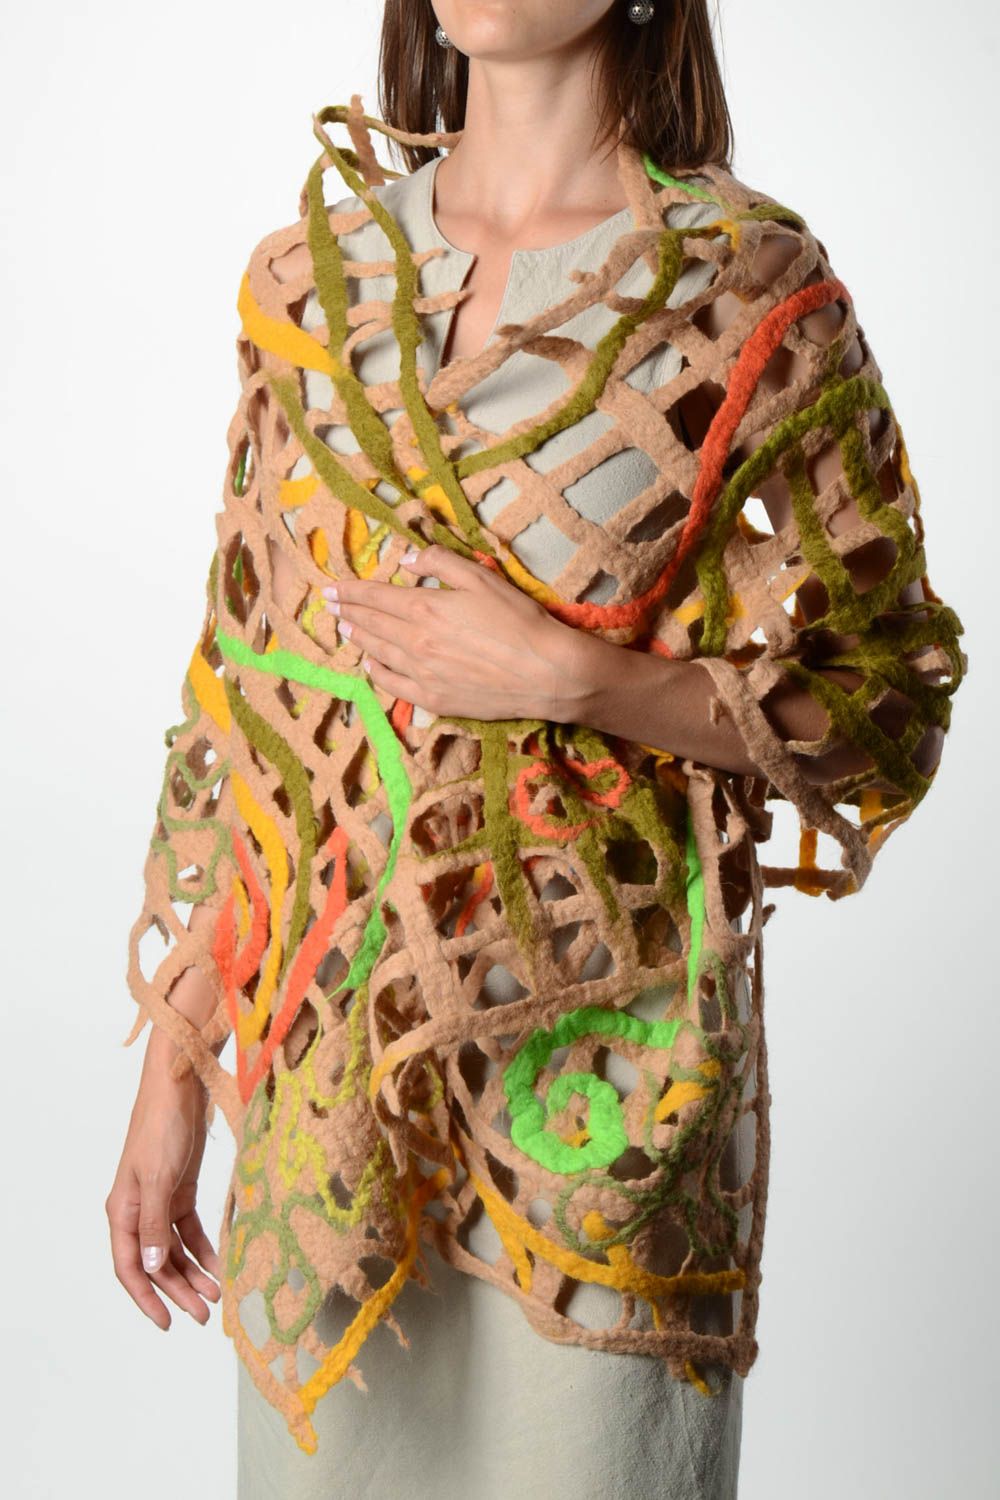 Handmade gefilzter Schal Frauen Accessoire Geschenk für Frau aus Wolle foto 1